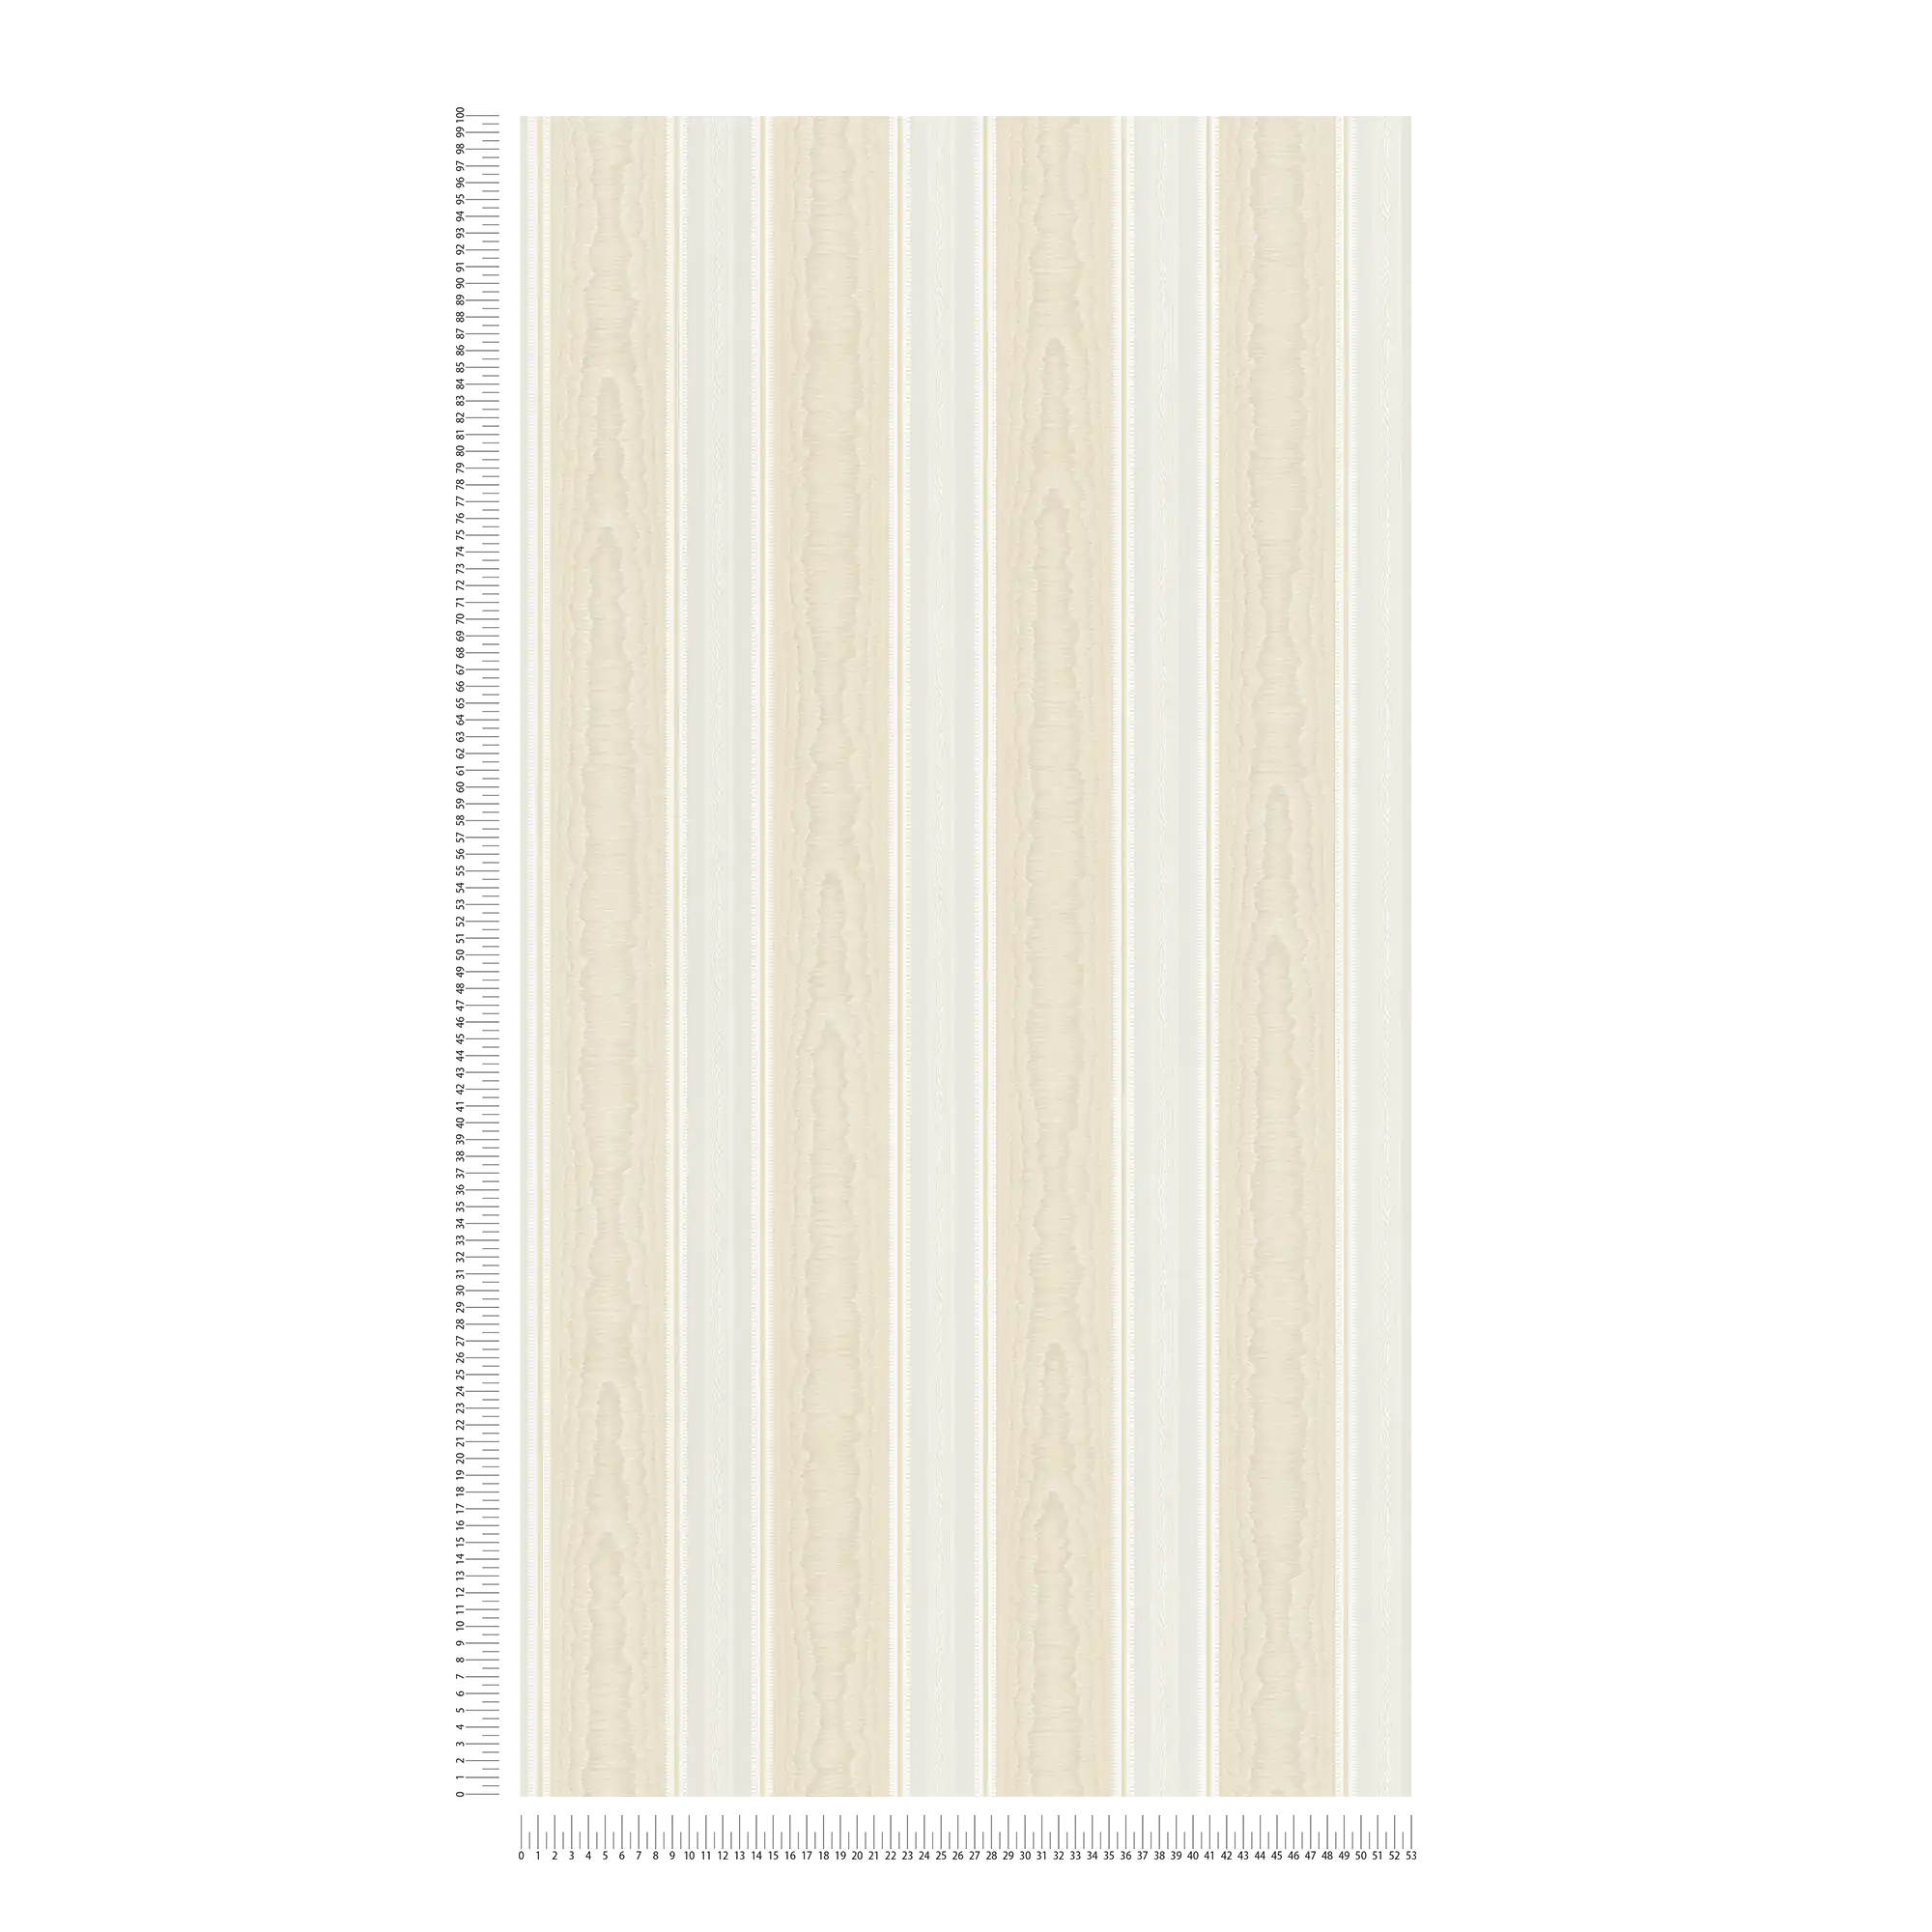             Gestreept behang met zijde moiré effect - beige, wit
        